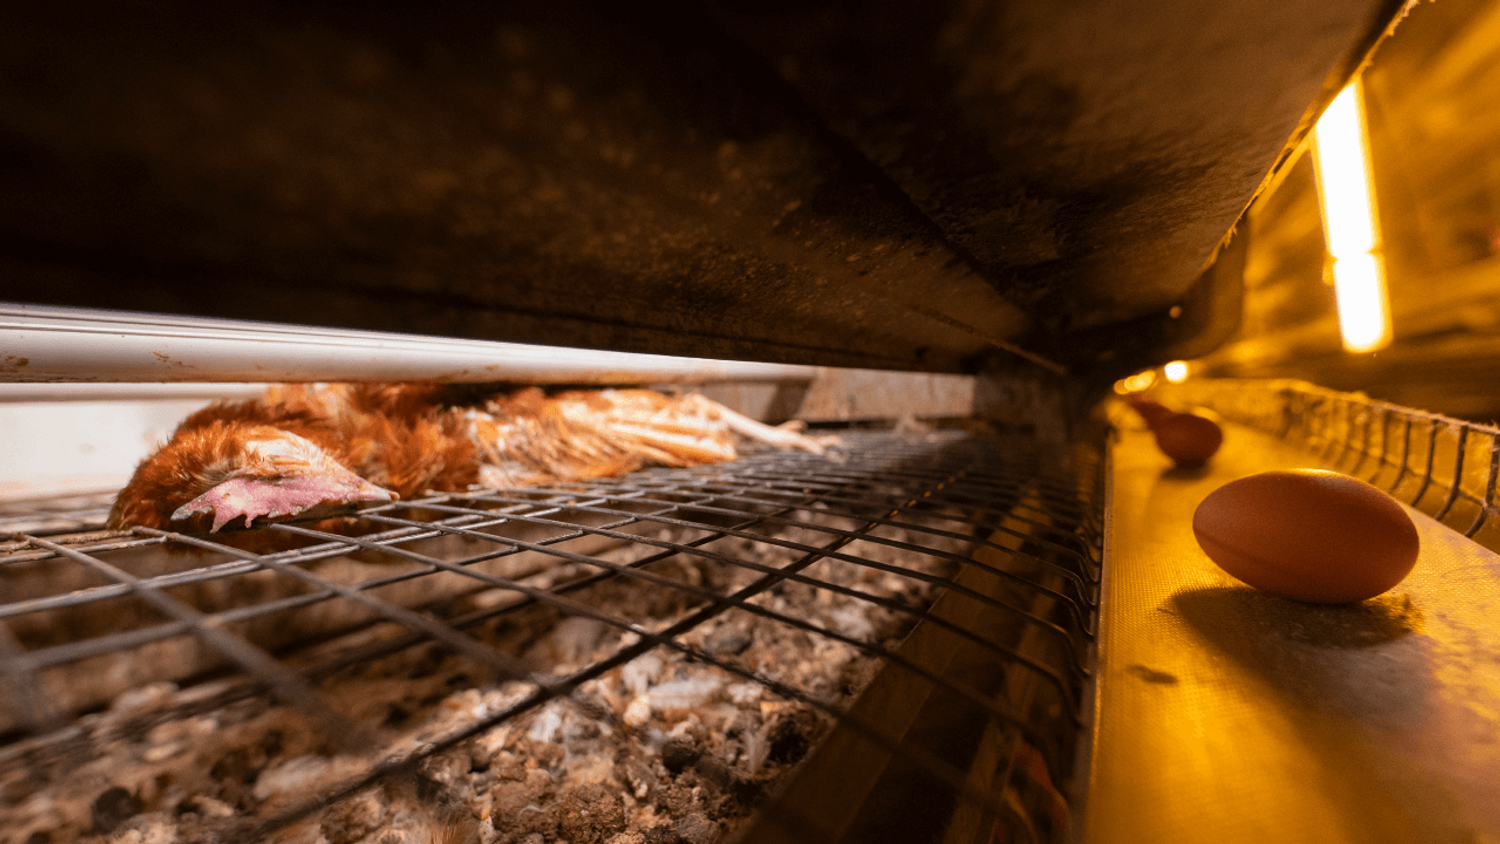 Deux-Sèvres: L214 dénonce des "violences" dans un élevage de poules, le groupe réfute